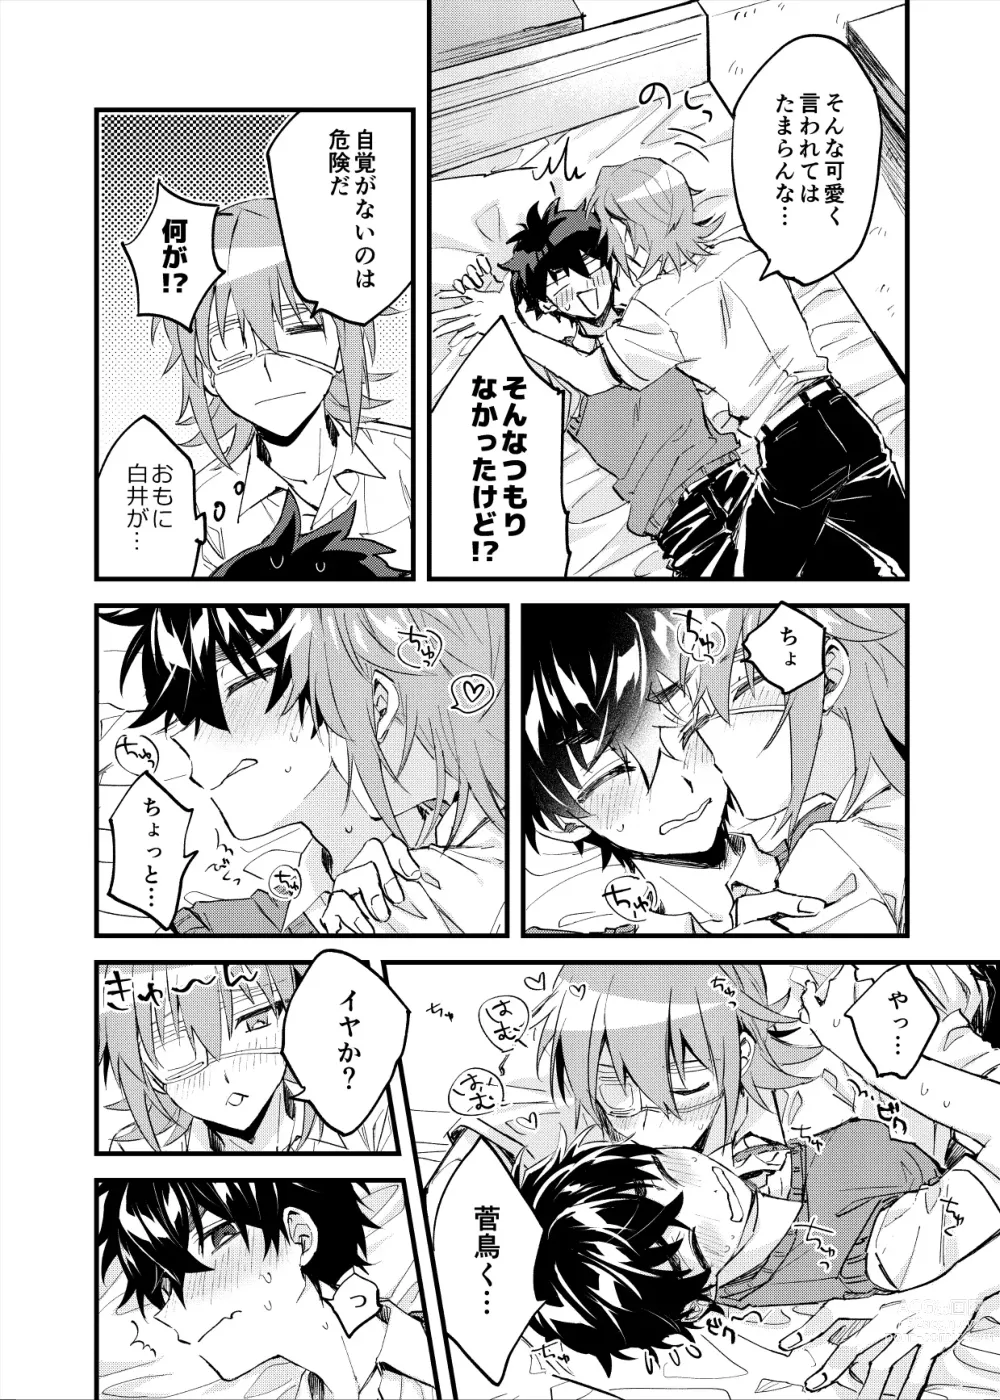 Page 13 of doujinshi Yoaketa Mukou ni Mieru Hoshi